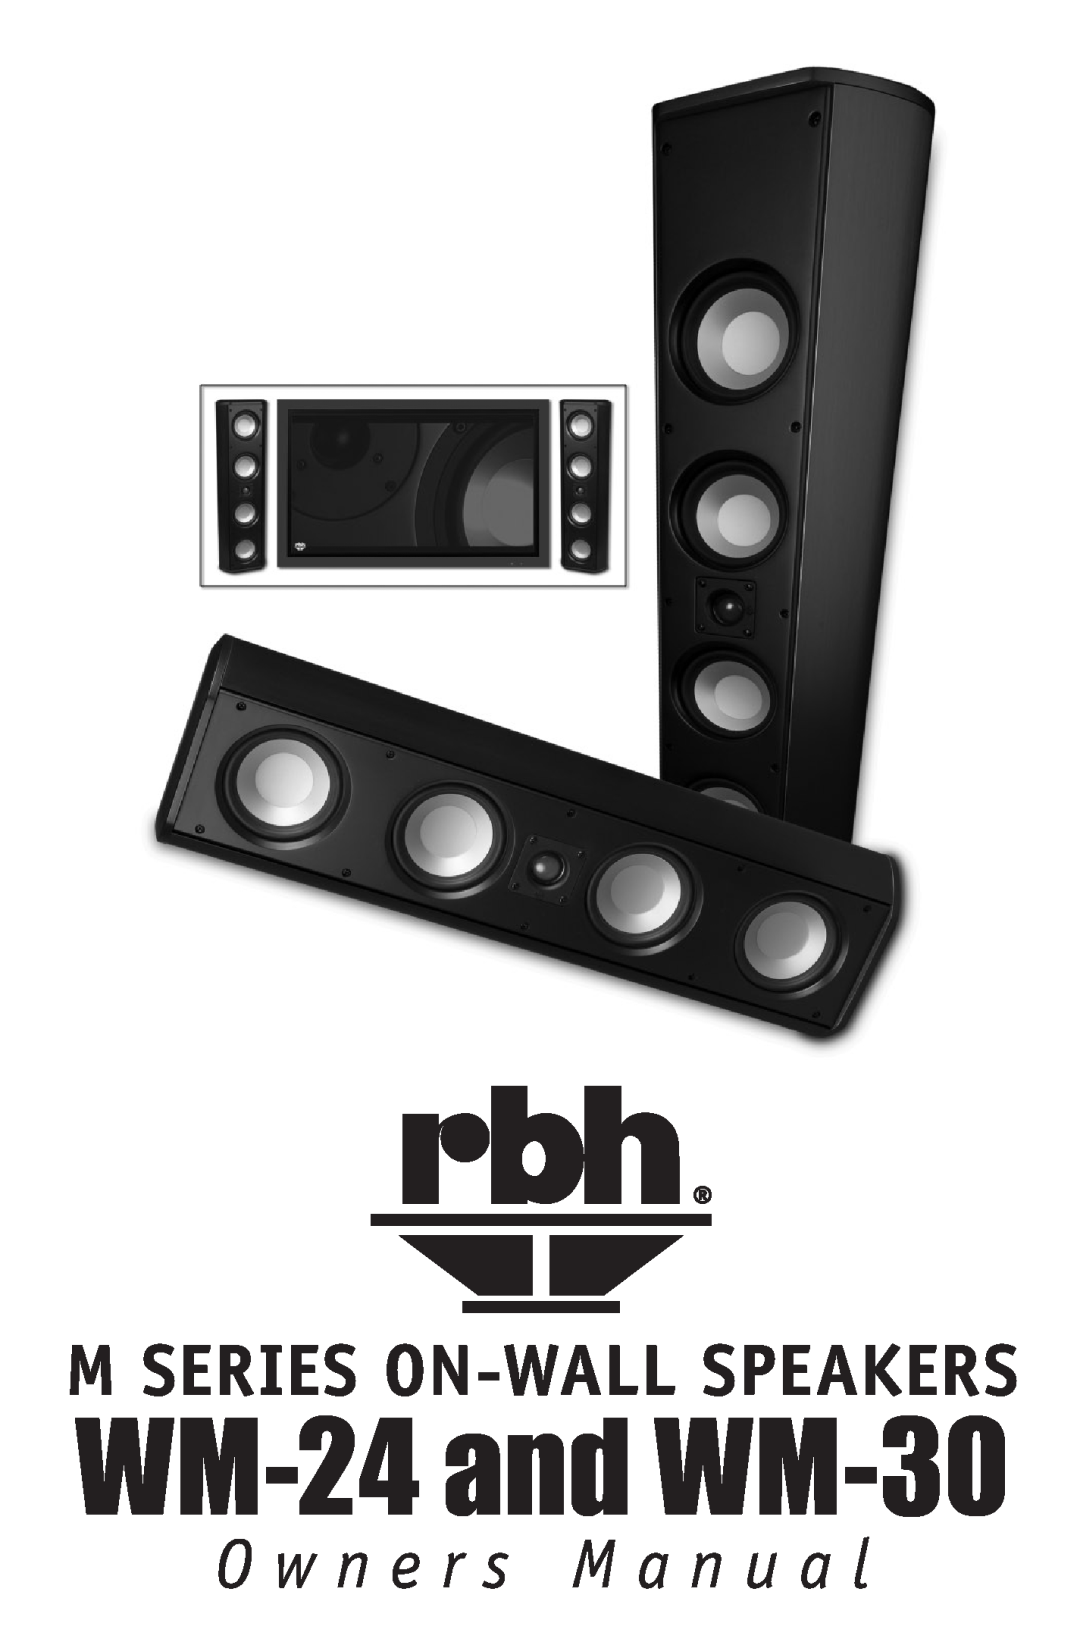 RBH Sound owner manual WM-24and WM-30, O w n e r s M a n u a l, M Series On-Wallspeakers 